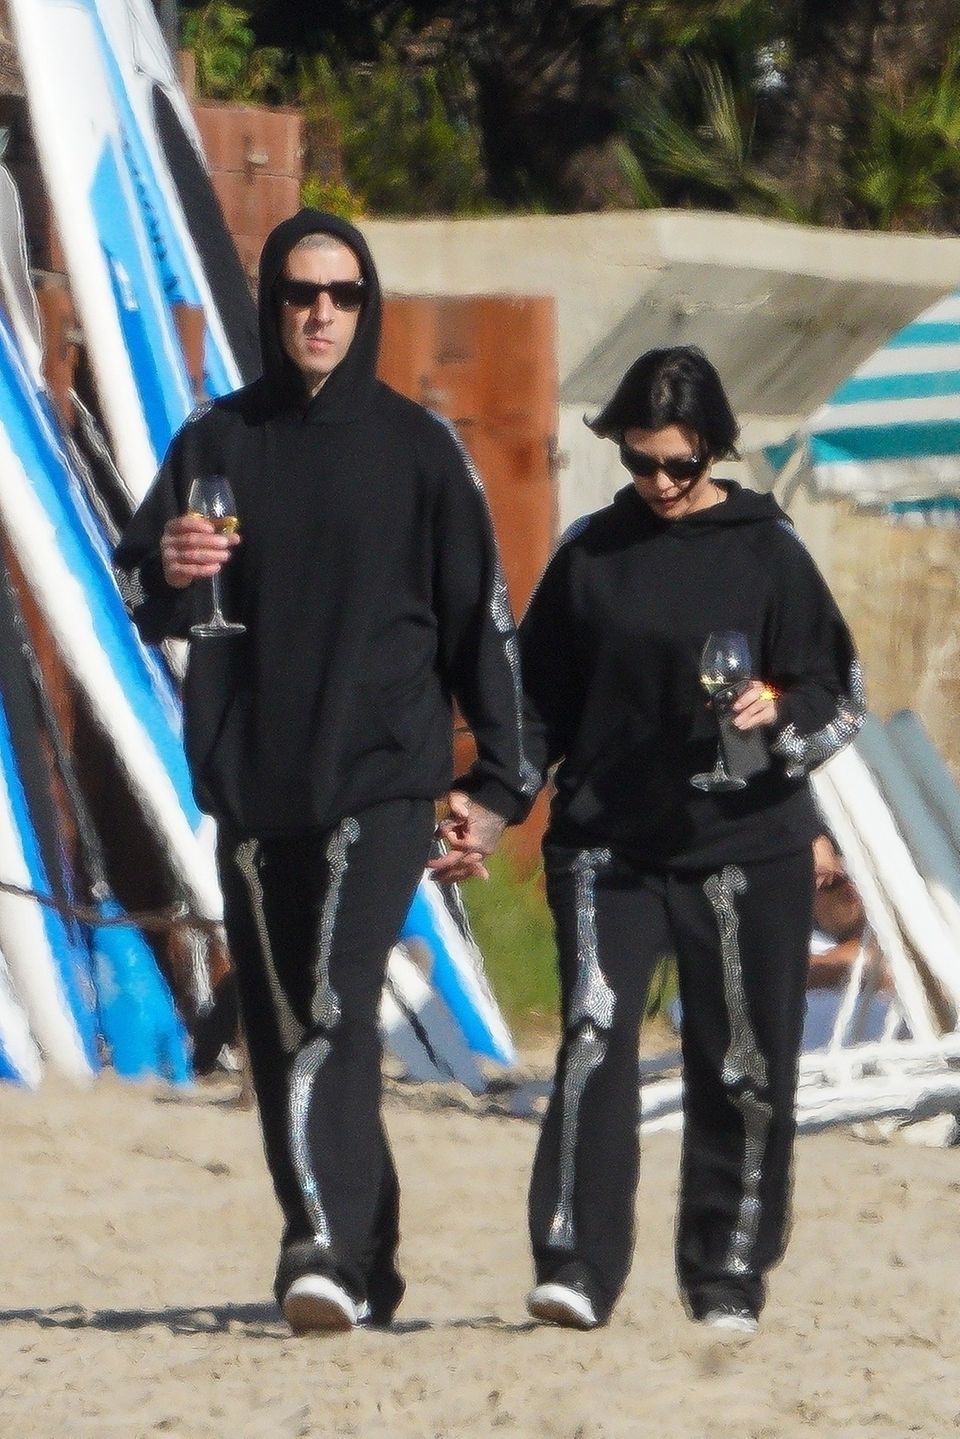 Kourtney Kardashian und Travis Barker feiern das einjährige Jubiläum ihrer Verlobung ganz gemütlich mit zwei Gläsern Wein am Strand von Santa Barbara. Die Outfits der Wahl? Schwarze Jogging-Anzüge mit Gruselfaktor. So blitzen Skelettknochen an den Ärmelseiten der Hoodies und an den Frontseiten der Hosen auf. Ganz schön schaurig!